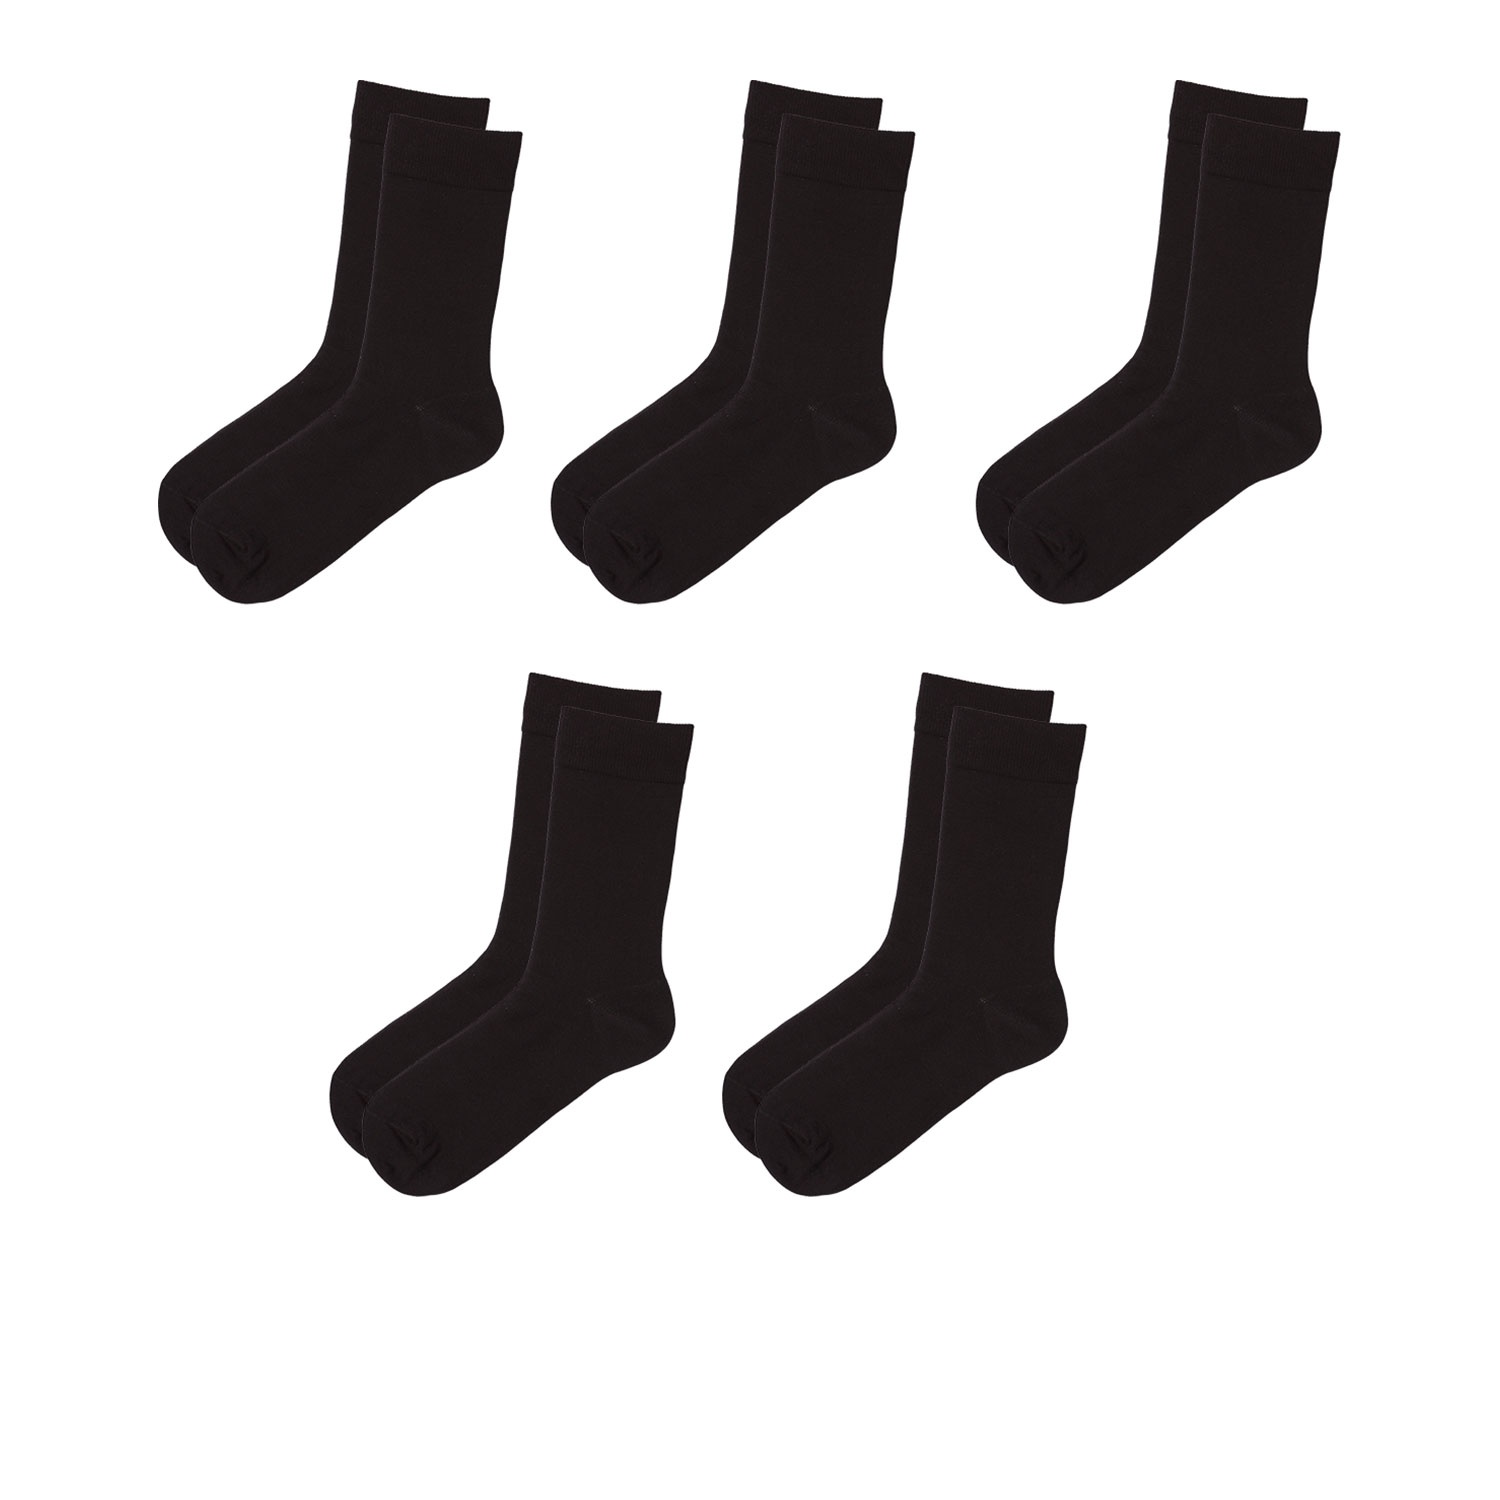 WATSON´S Herren Socken, 5 Paar